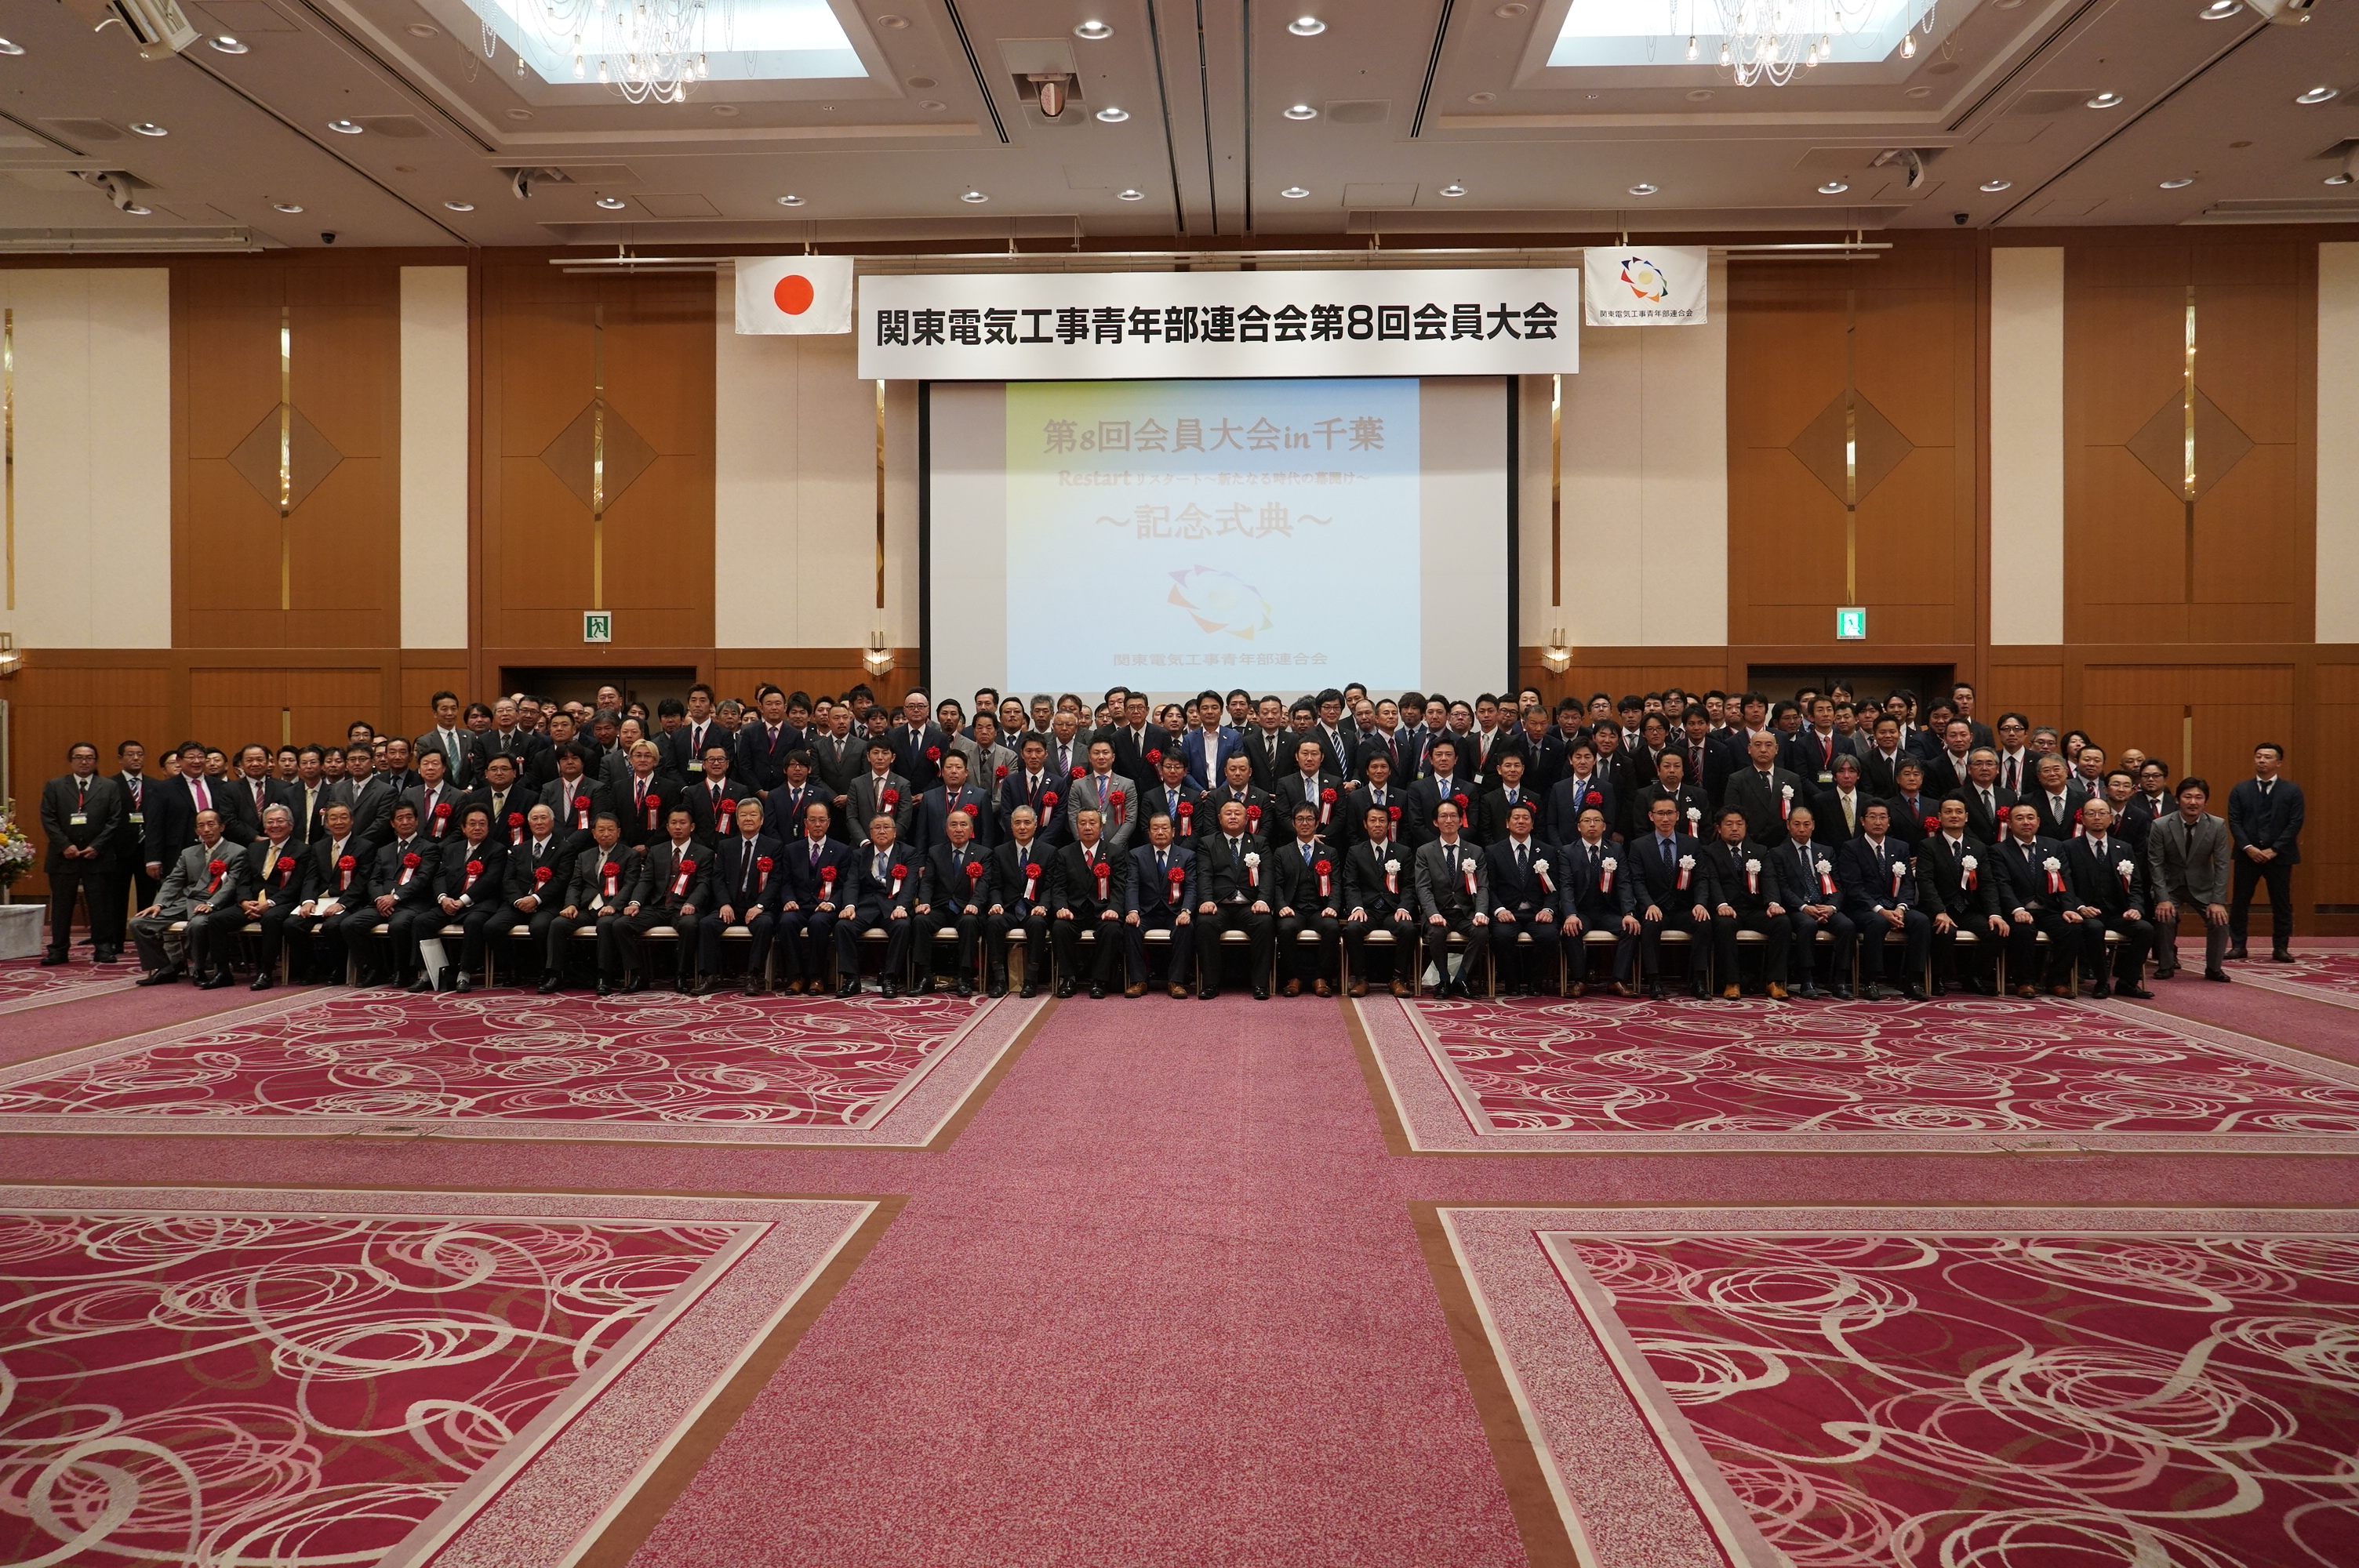 関東電気工事青年部連合会 第8回会員大会のイメージ